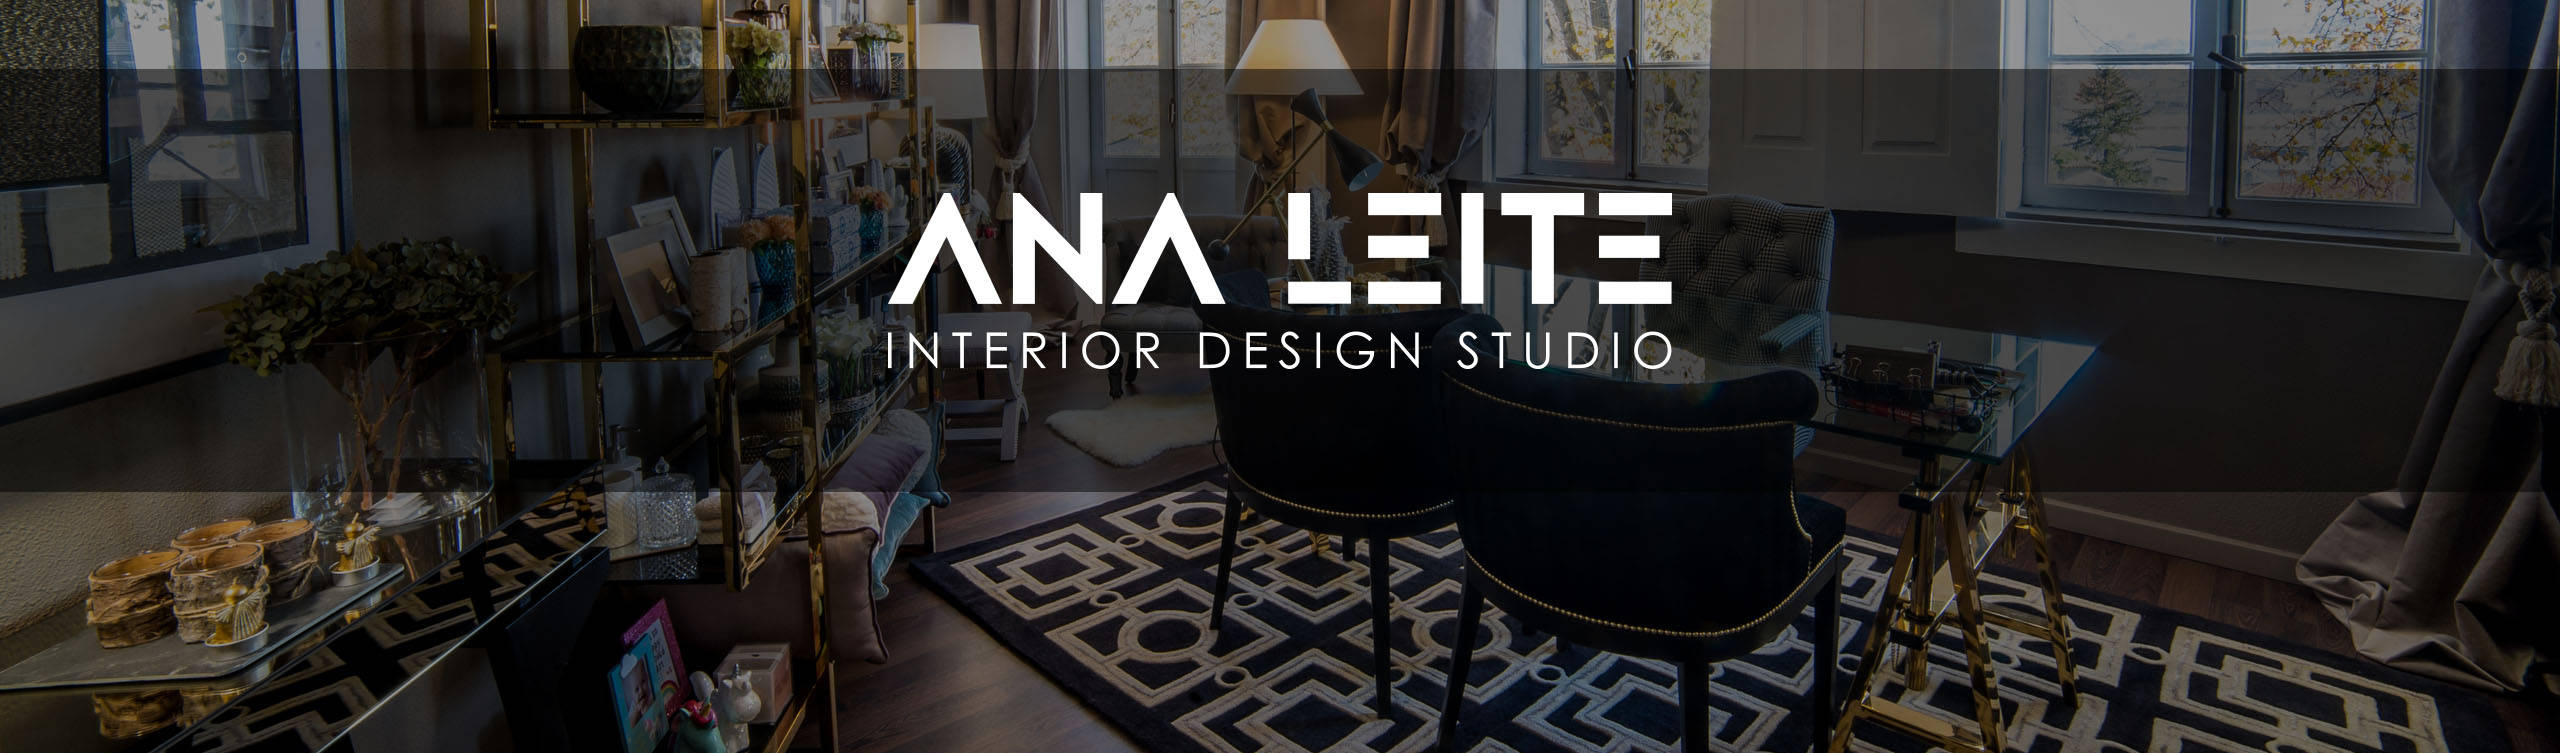 ANA LEITE – INTERIOR DESIGN STUDIO